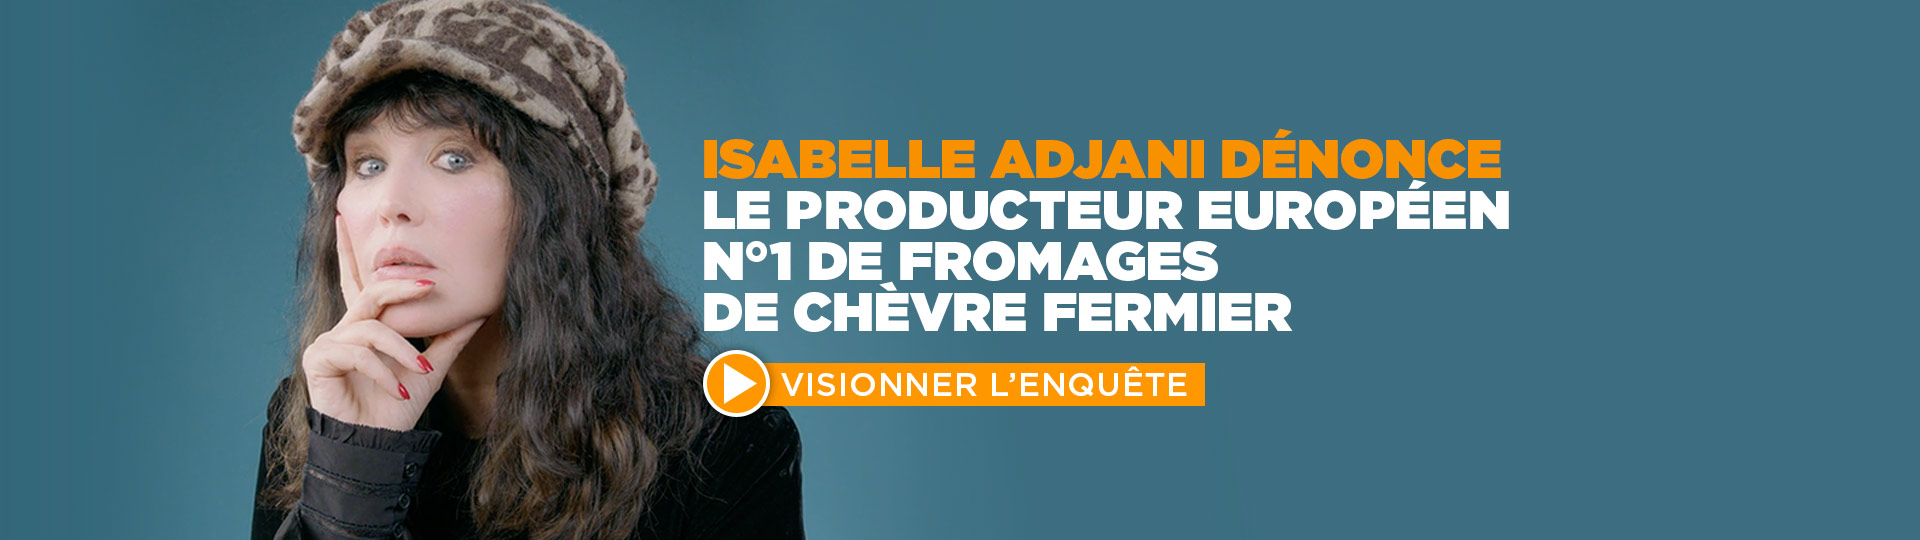 Isabelle Adjani dénonce « l’élevage sordide du 1er producteur européen de fromages de chèvre fermier »